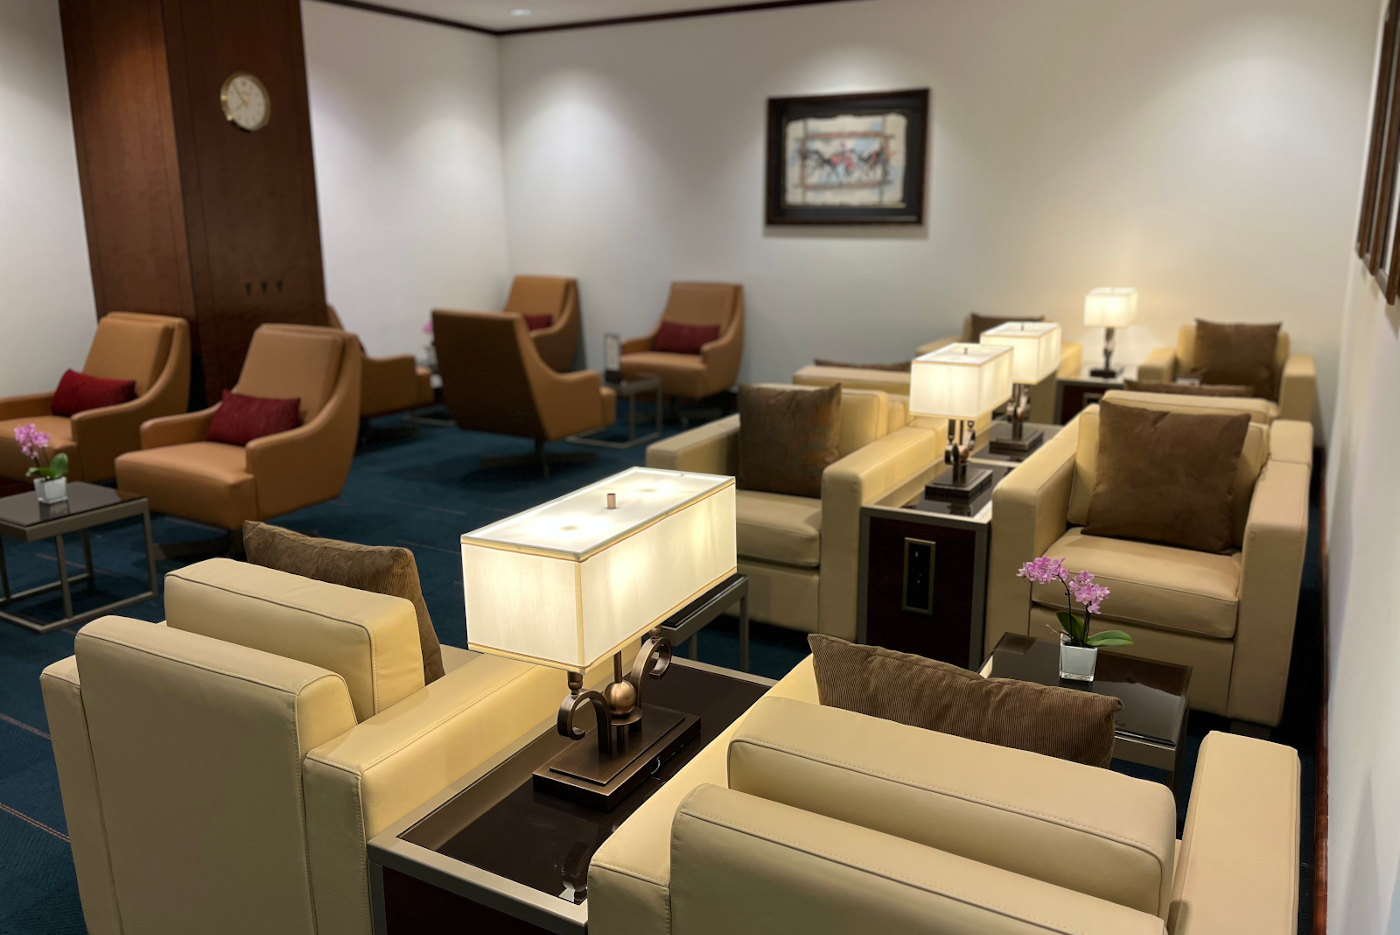 Emirates Lounge München Flughafen (MUC) renoviert